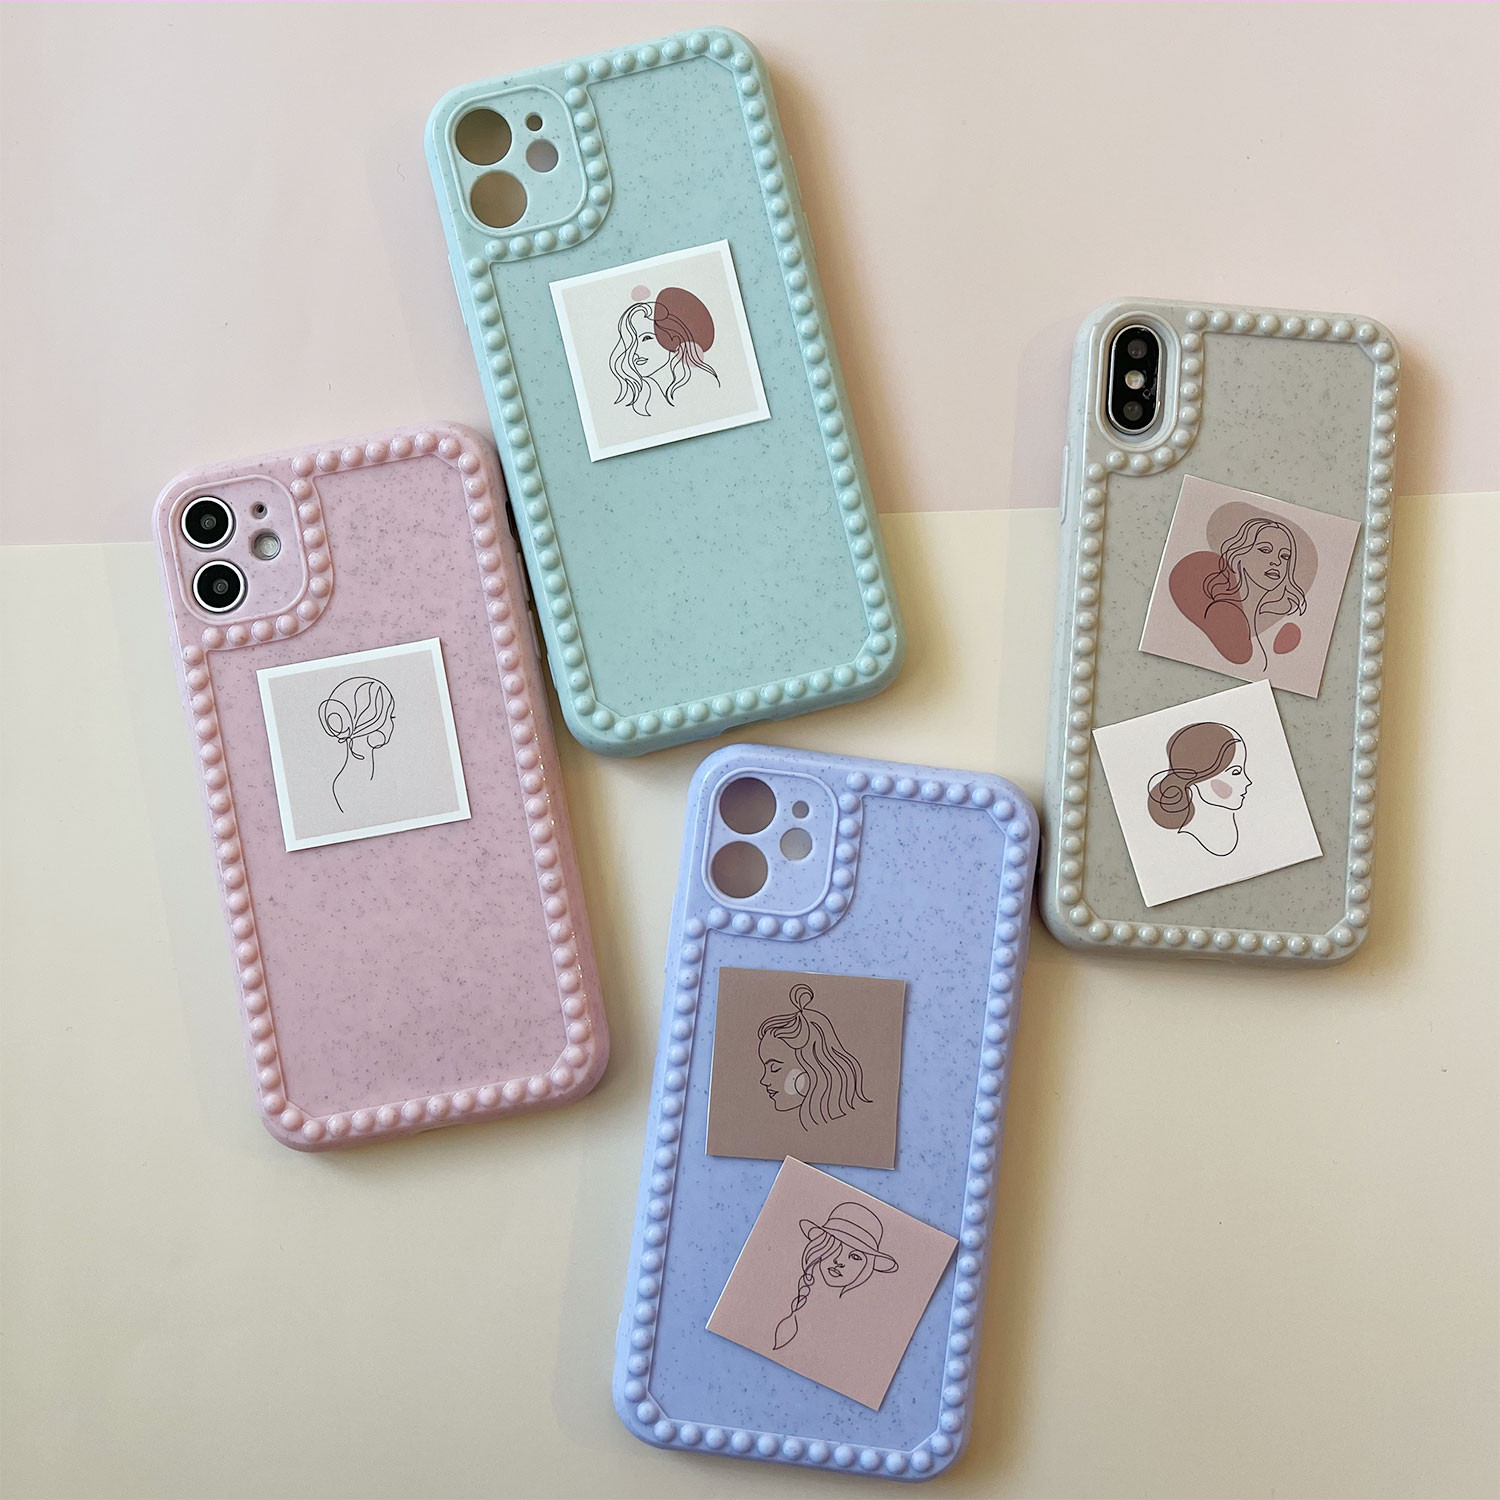 2 7up 大人かわいい くすみカラーのiphoneケースとステッカーシールがお得なセットに Usagi Case ウサギケース 韓国iphone ケース通販